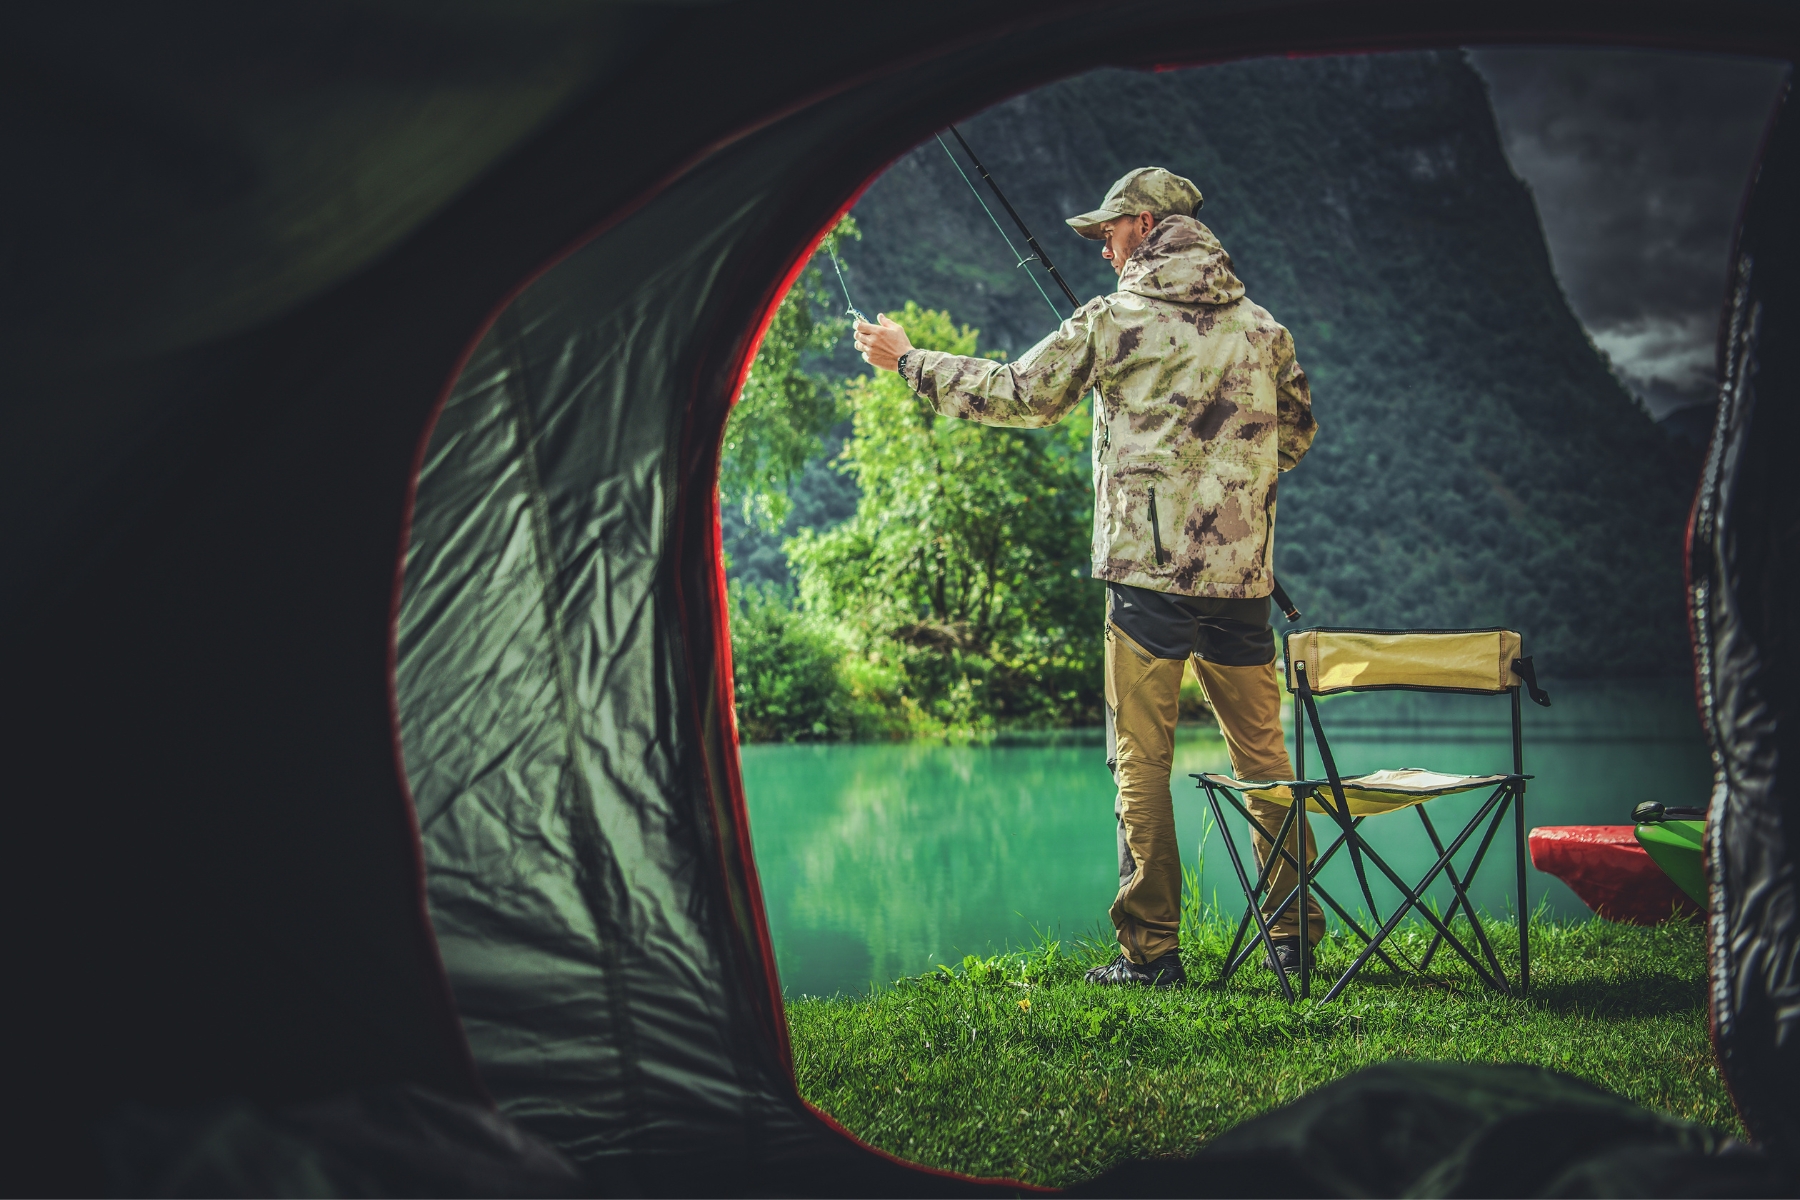 Descubra como escolher o tamanho ideal de barraca de camping para suas aventuras de pesca, garantindo conforto, praticidade e segurança.